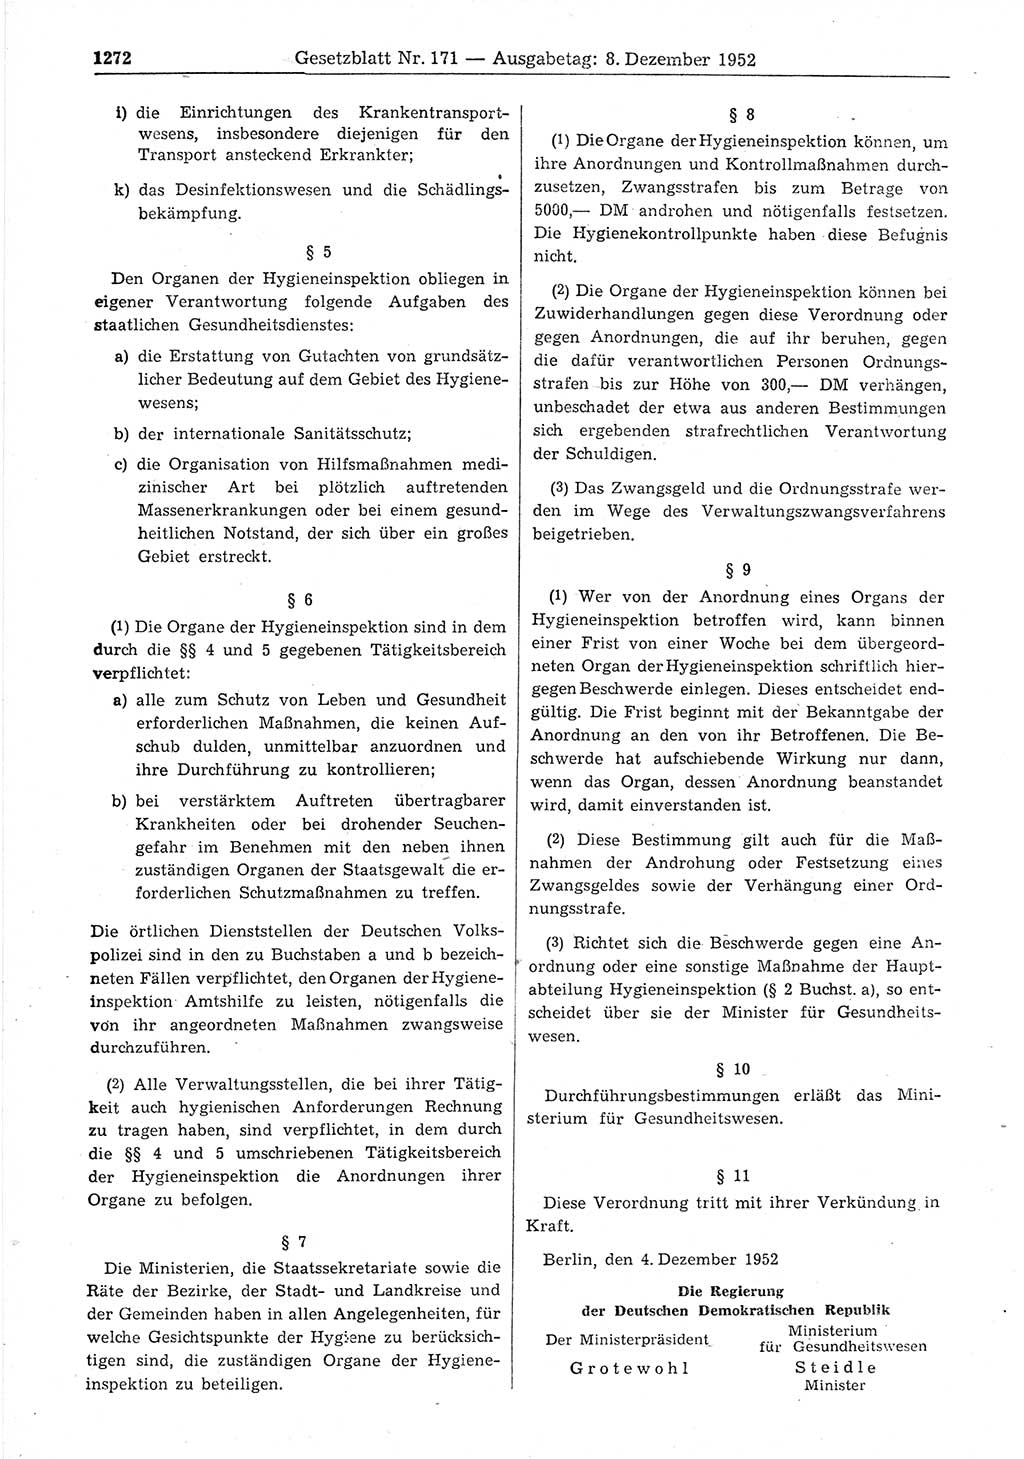 Gesetzblatt (GBl.) der Deutschen Demokratischen Republik (DDR) 1952, Seite 1272 (GBl. DDR 1952, S. 1272)